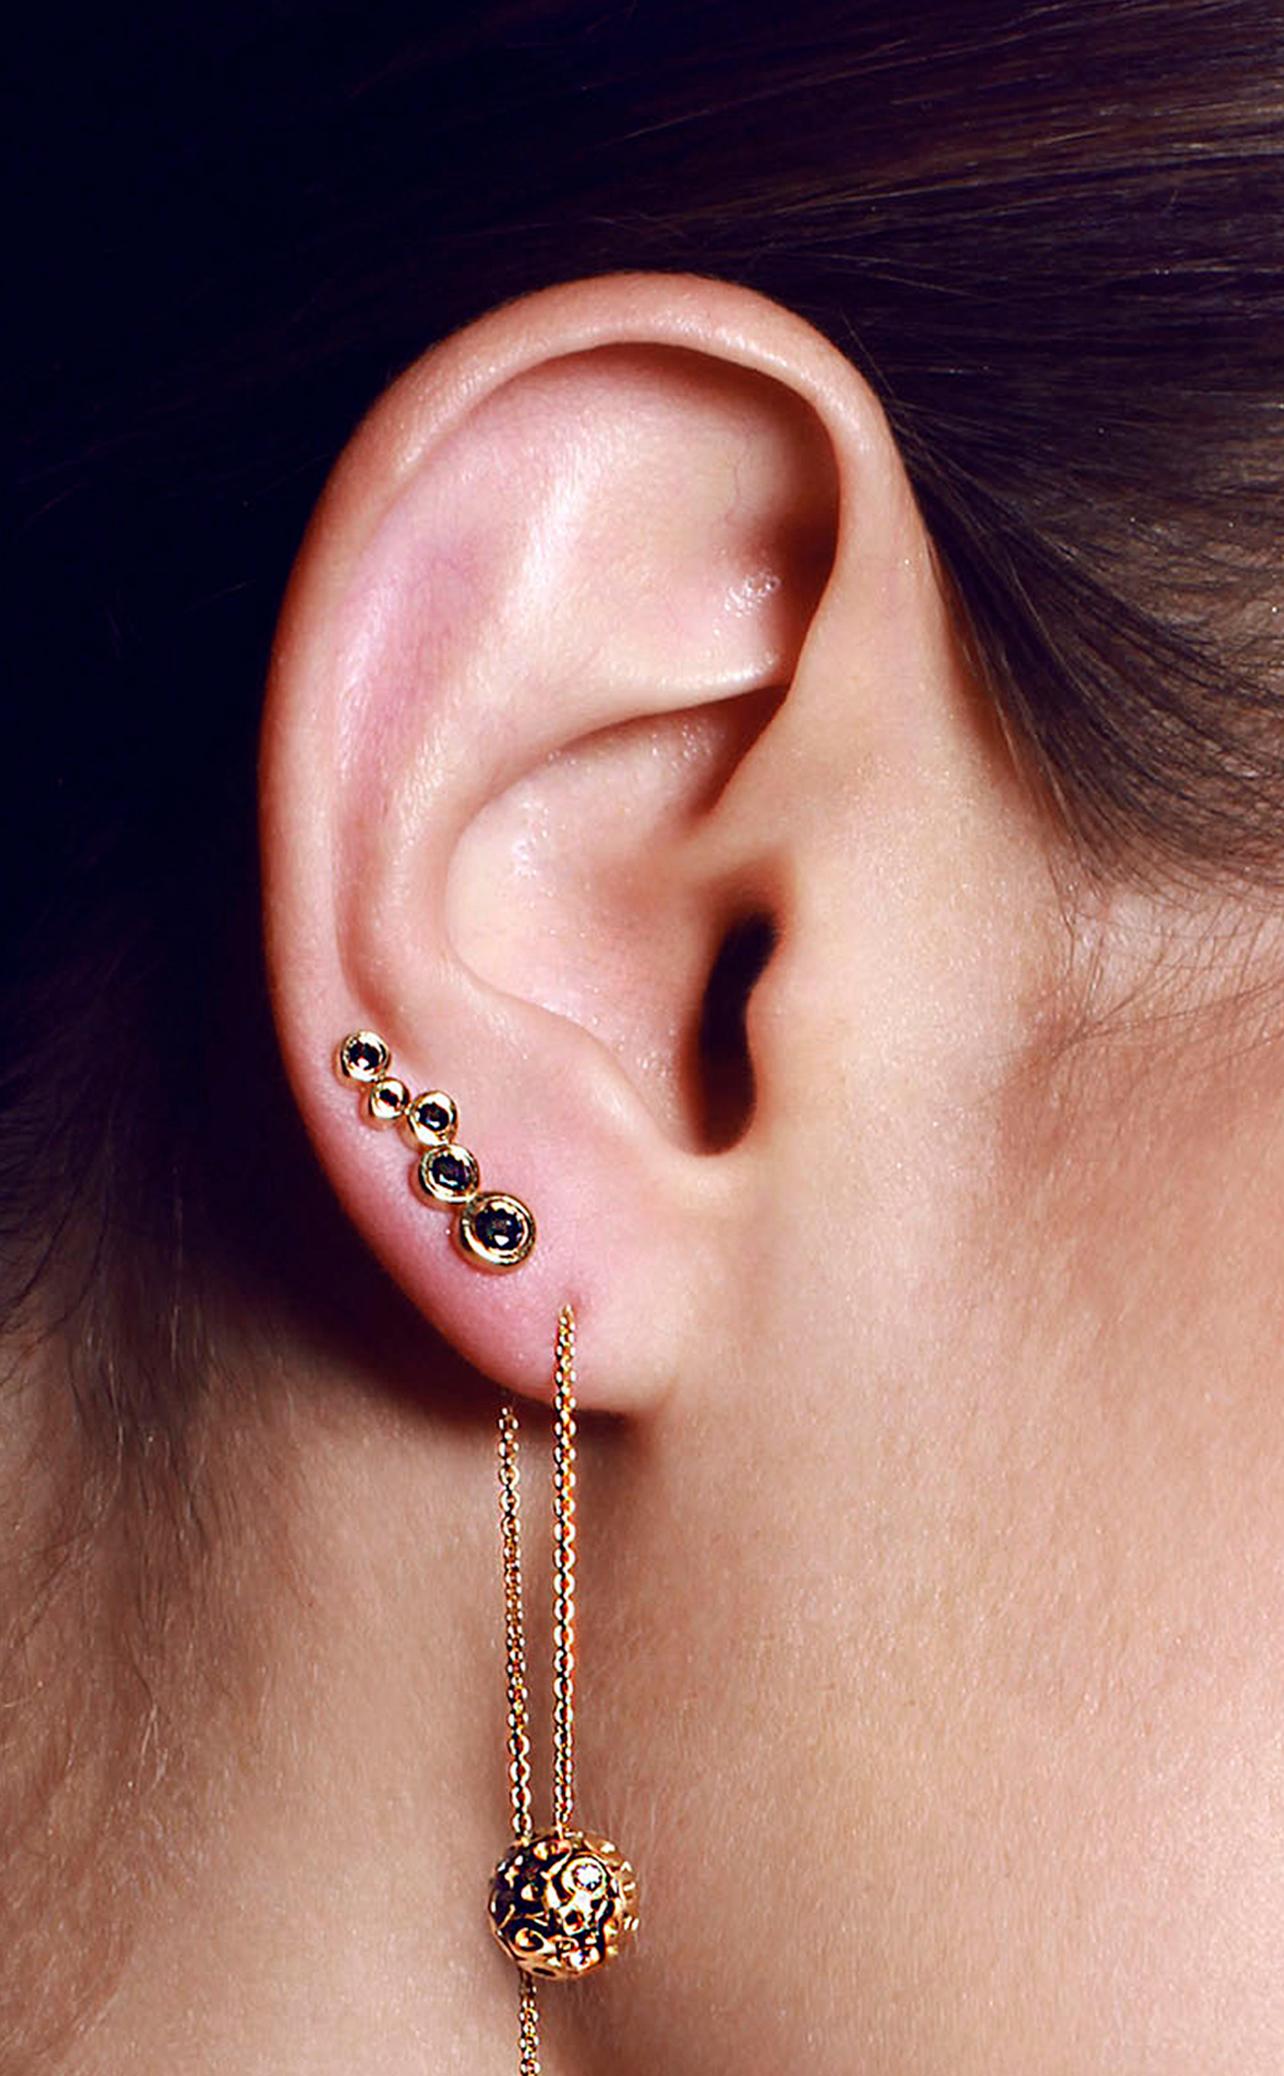 Portez cette longue boucle d'oreille linéaire en forme de grimpette, ornée de diamants noirs, pour changer le
les boucles d'oreilles de la série des boucles d'oreilles de base ne sont pas les mêmes.

Inspiré par la vue en coupe de la vie, comme si